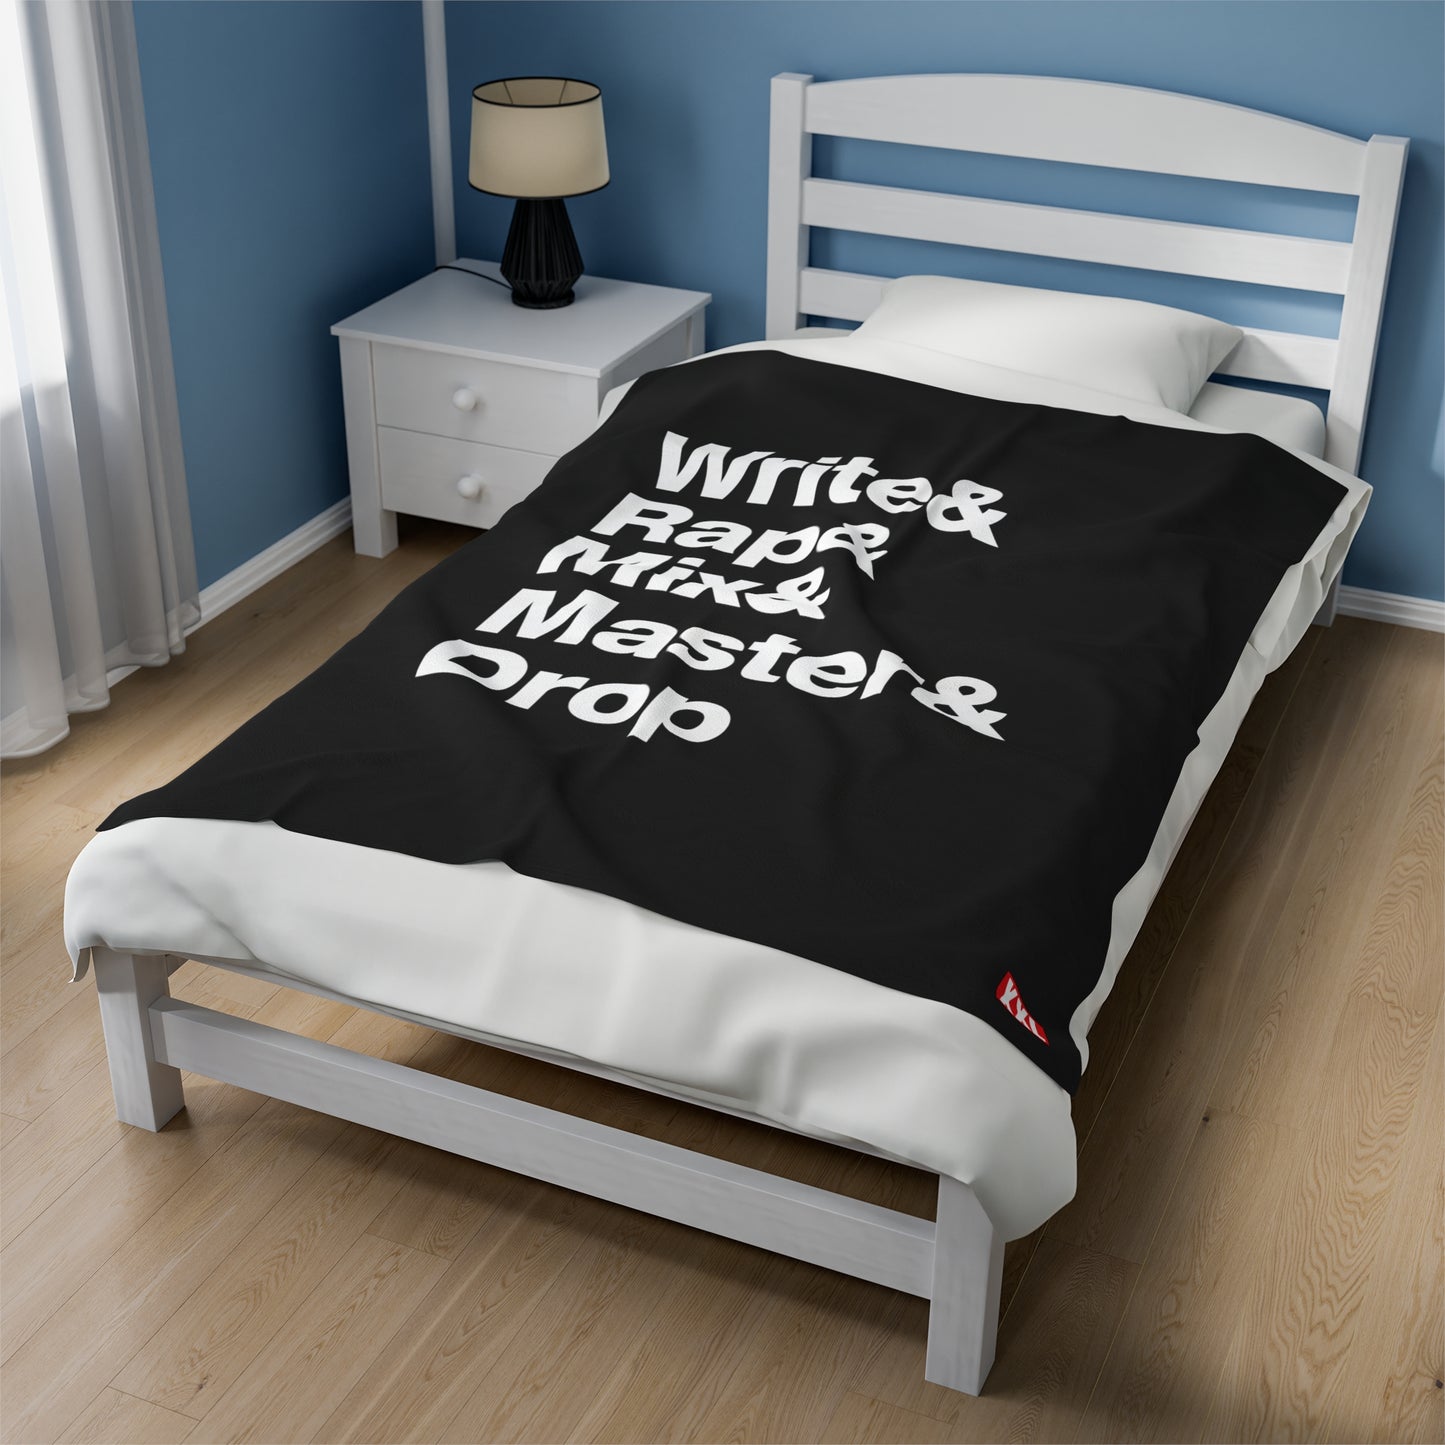 Write & Rap Plush Blanket